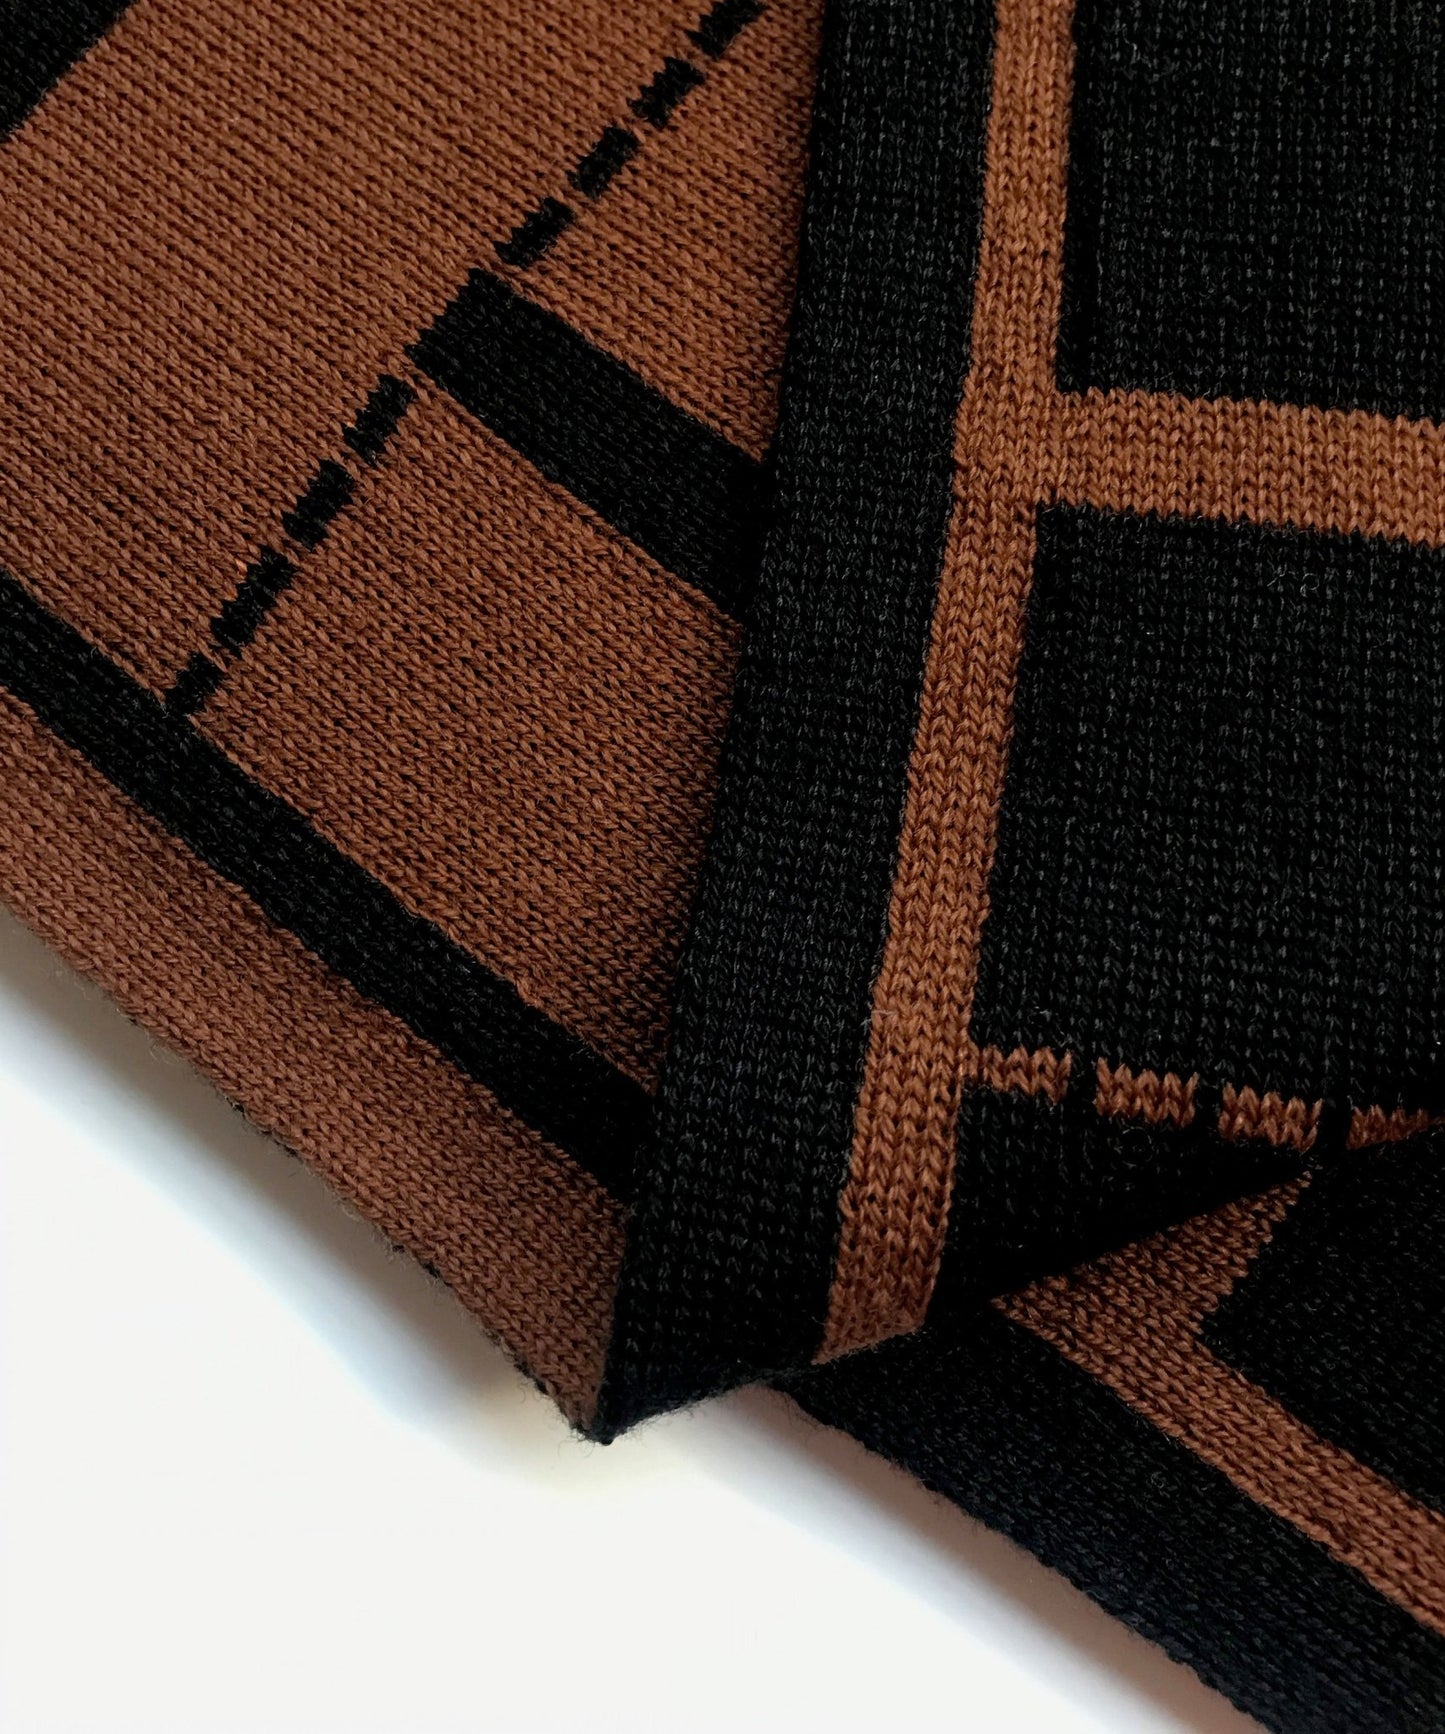 Biombo Merino Wool Blanket- Ambar Homeware throw - knitted throw - Details